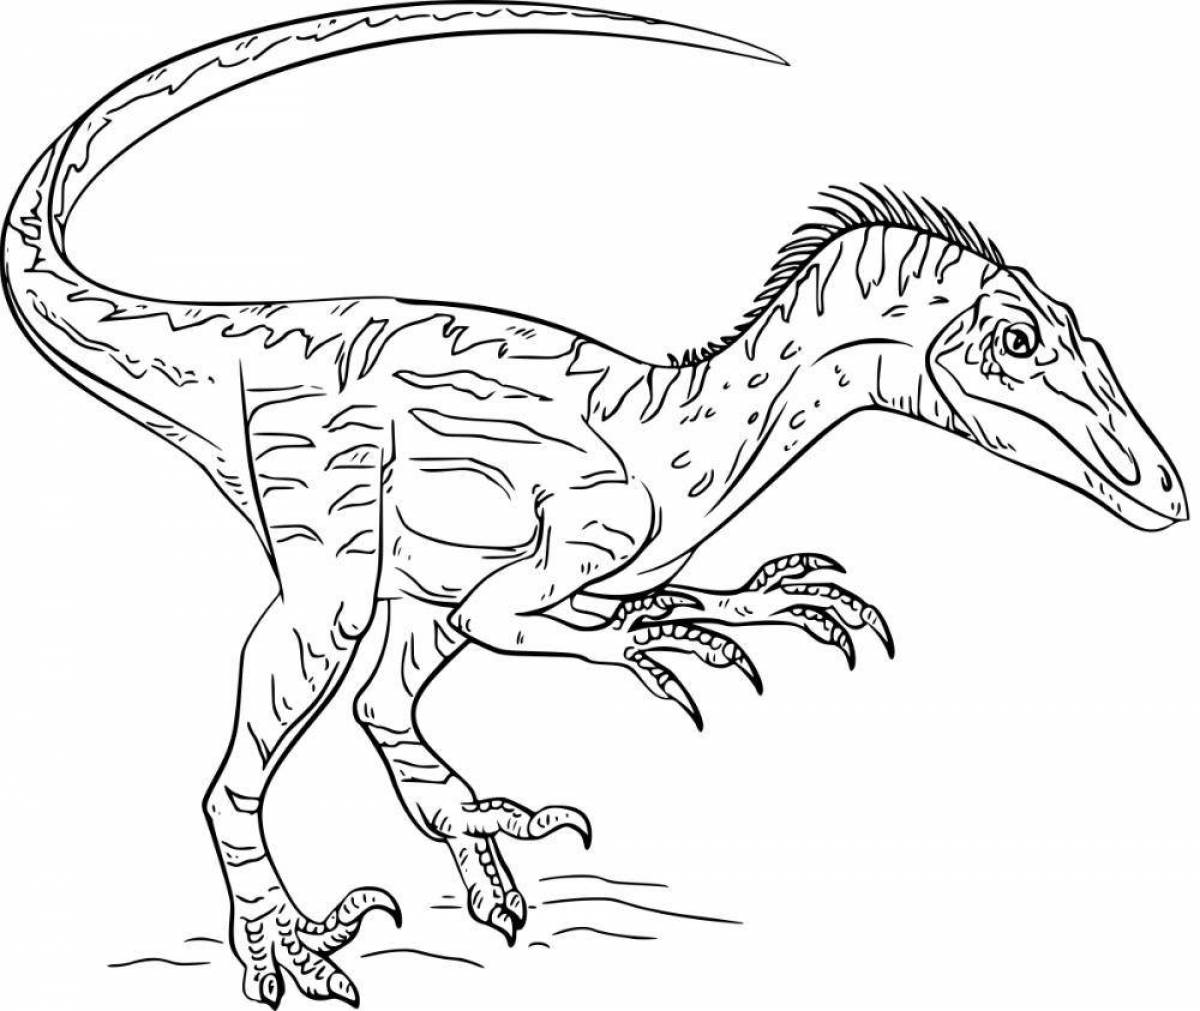 Привлекательная раскраска динозавров аллозавров